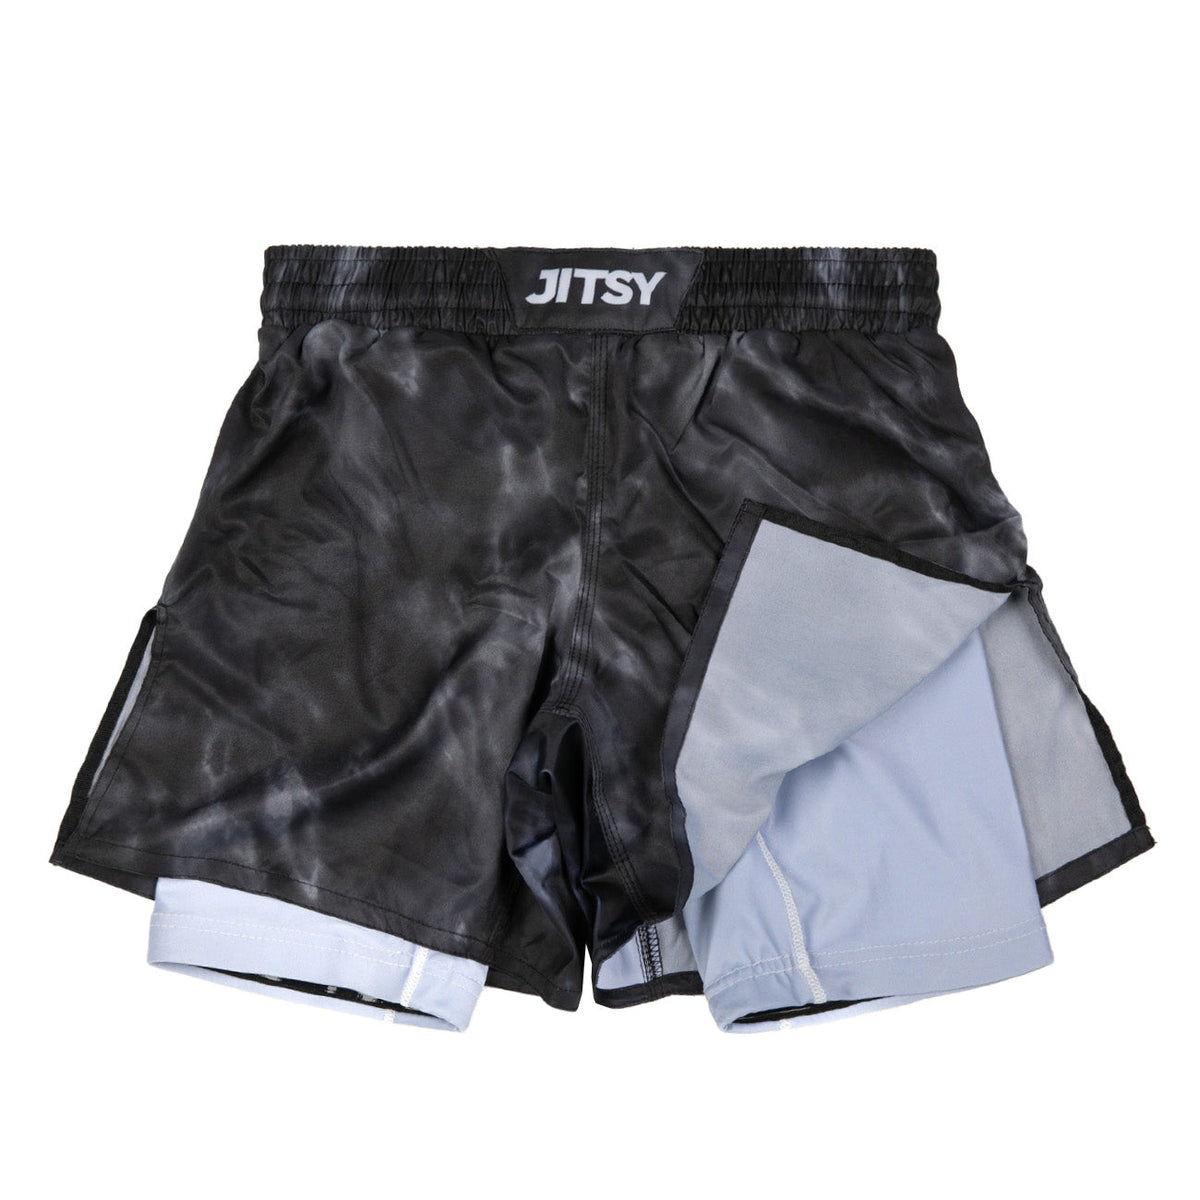 Custom Hybrid BJJ/MMA Shorts